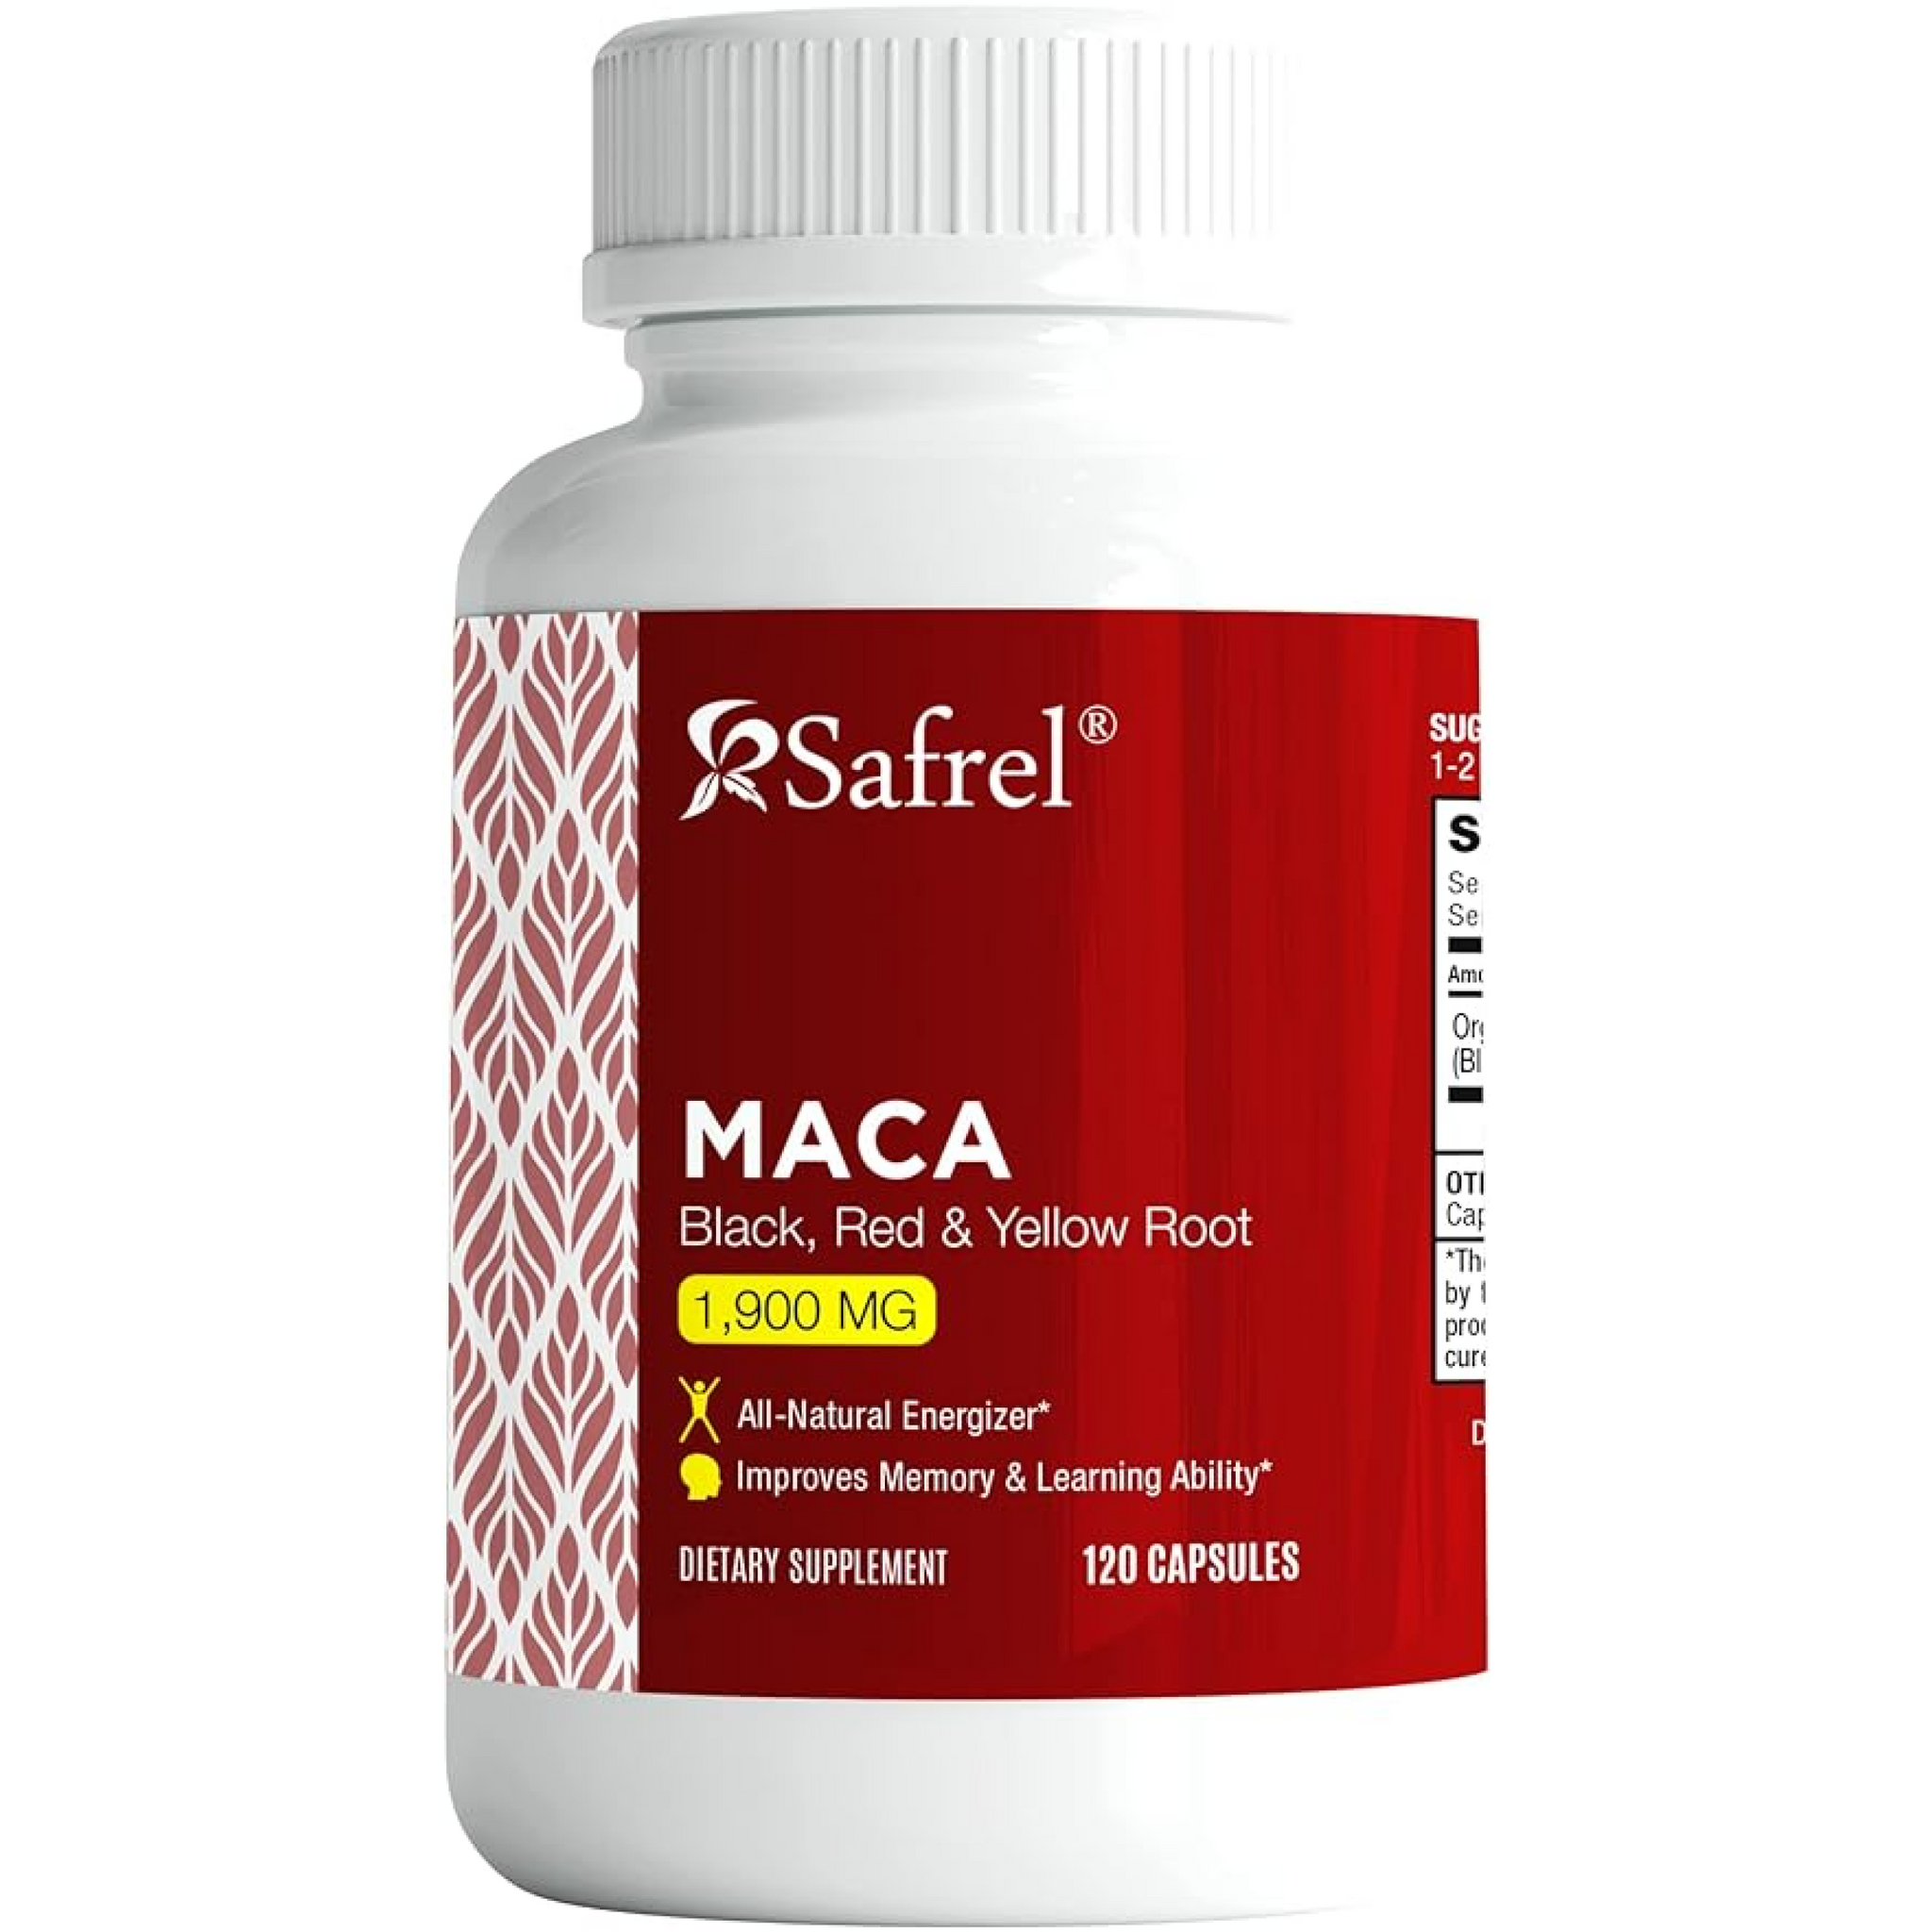 Maca (Gelatinised) Capsules 500 mg Organic